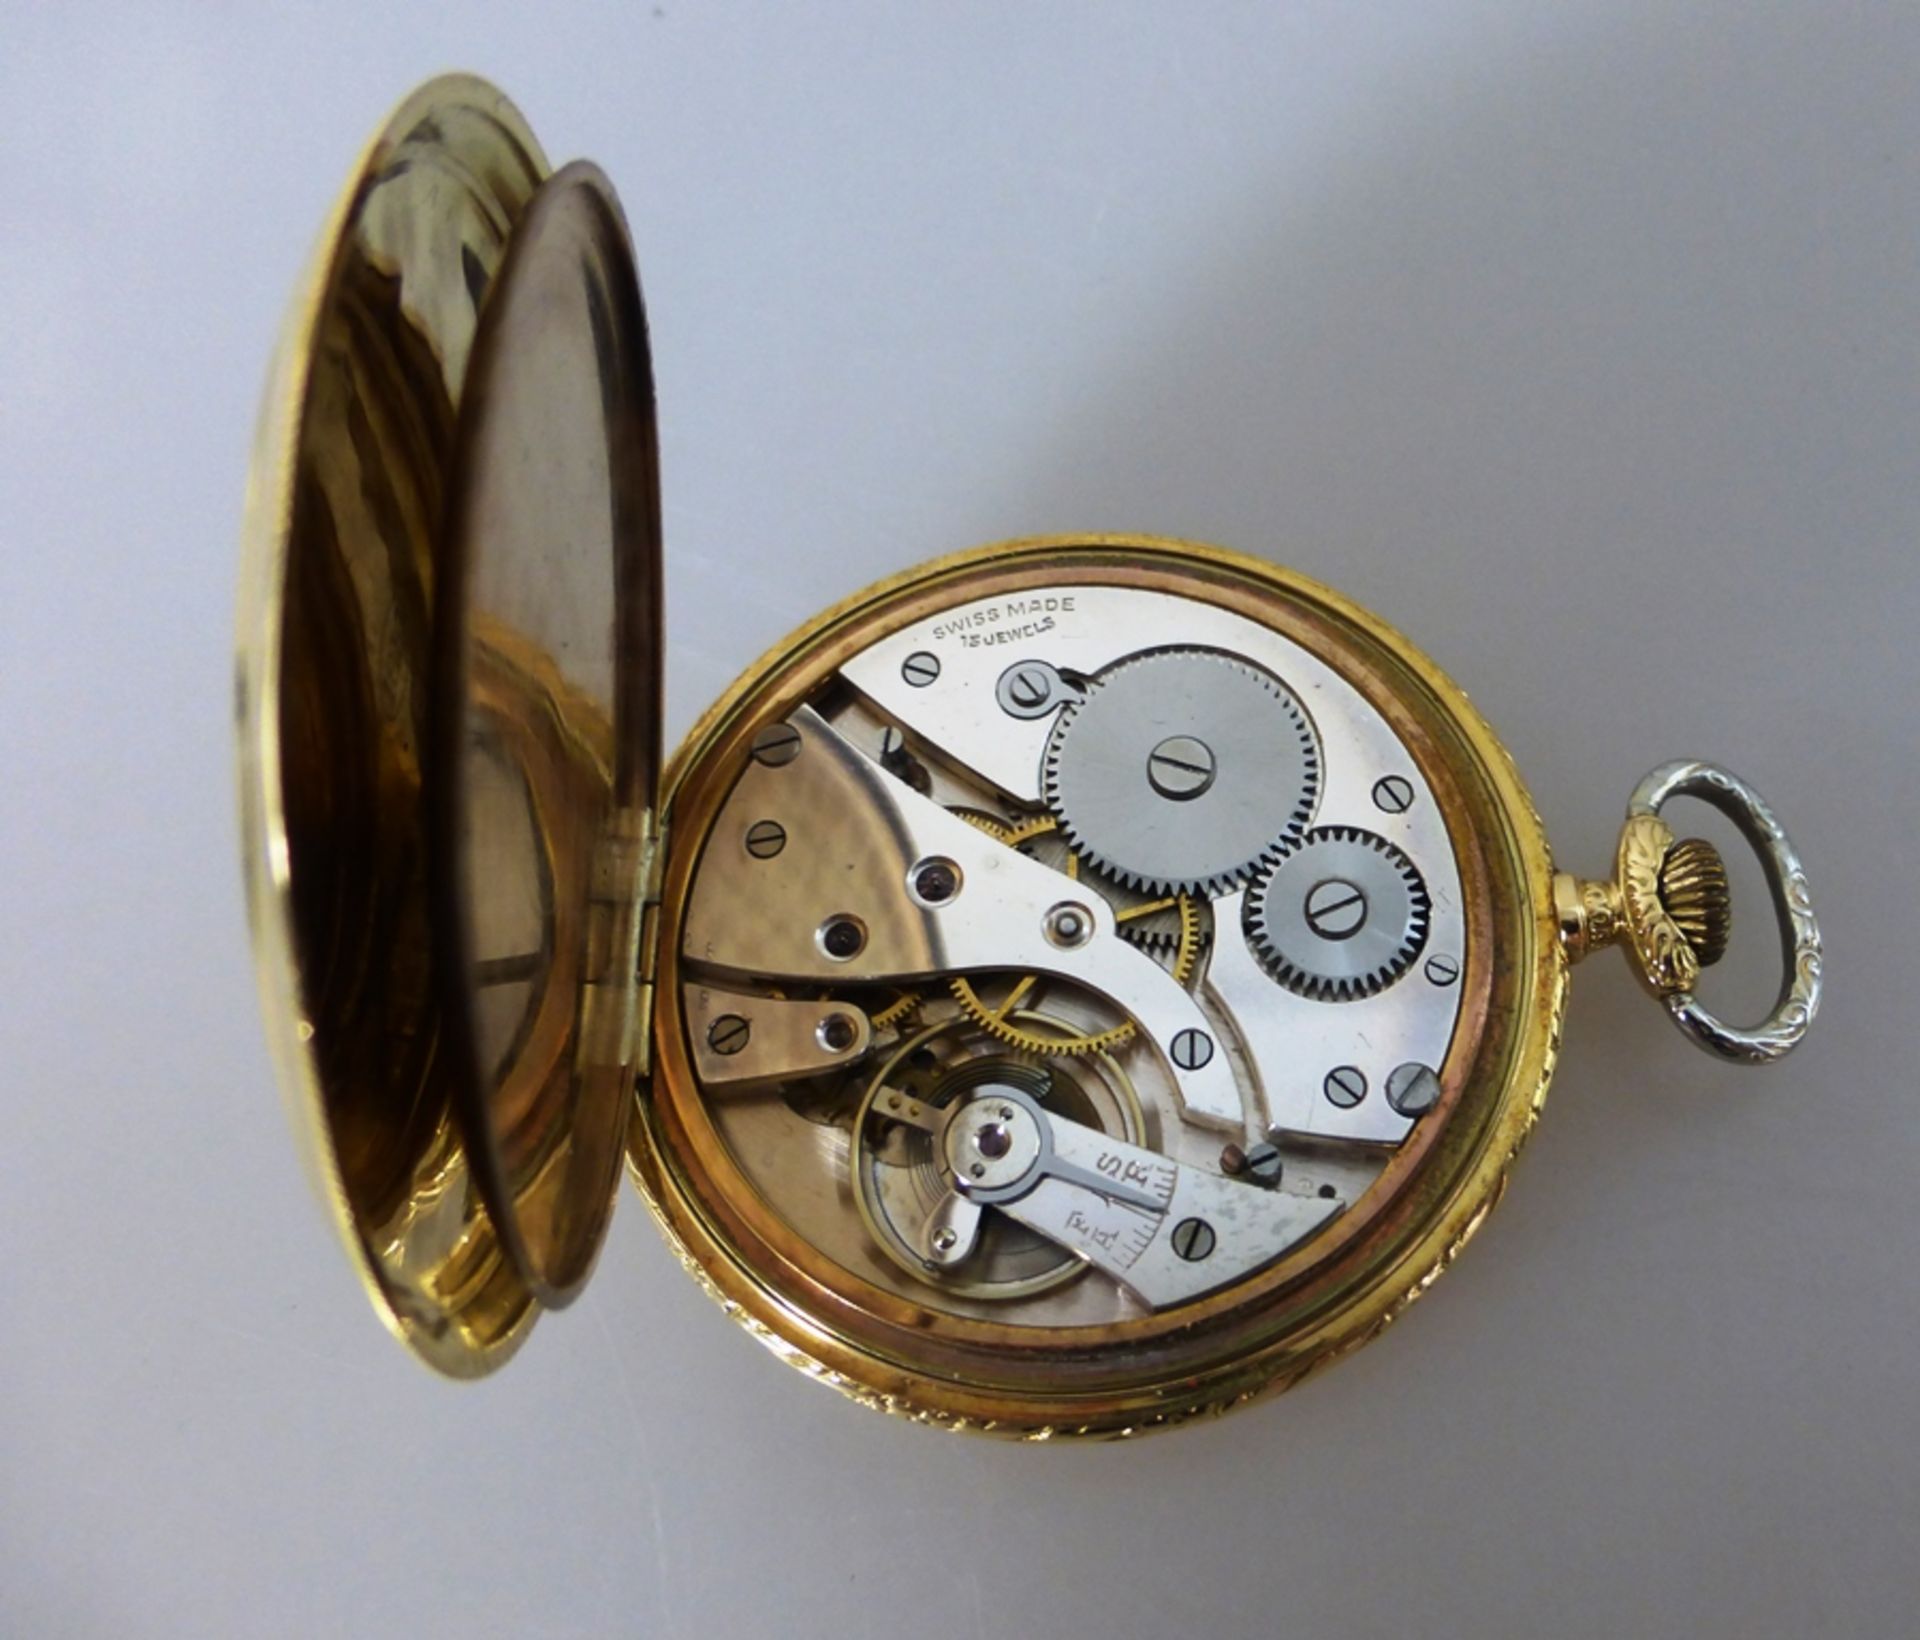 Goldtaschenuhr, Chronometre Emel, mit Streifendekor verziertes Goldgehäuse, Feingehalt - Image 3 of 3